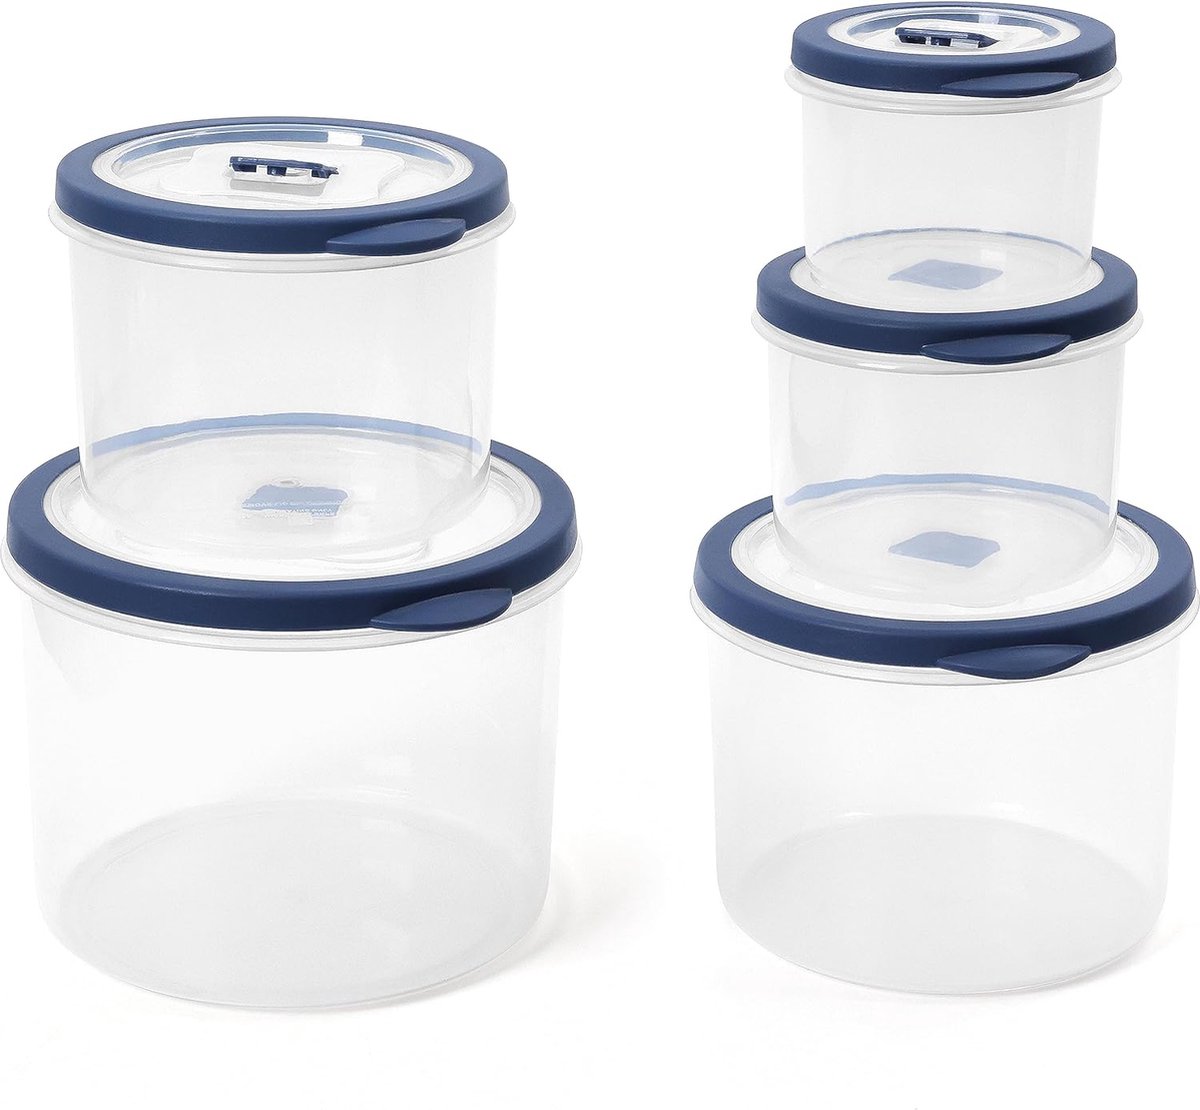 Voedselcontainers met Deksels (5 Pak) - Ronde Luchtdichte Magnettrondozen met Stoomventilatie - Diepvries, Koelkast, Magnetron & Vaatwasser Veilig - BPA-Vrij, Vershoudbakjes Set